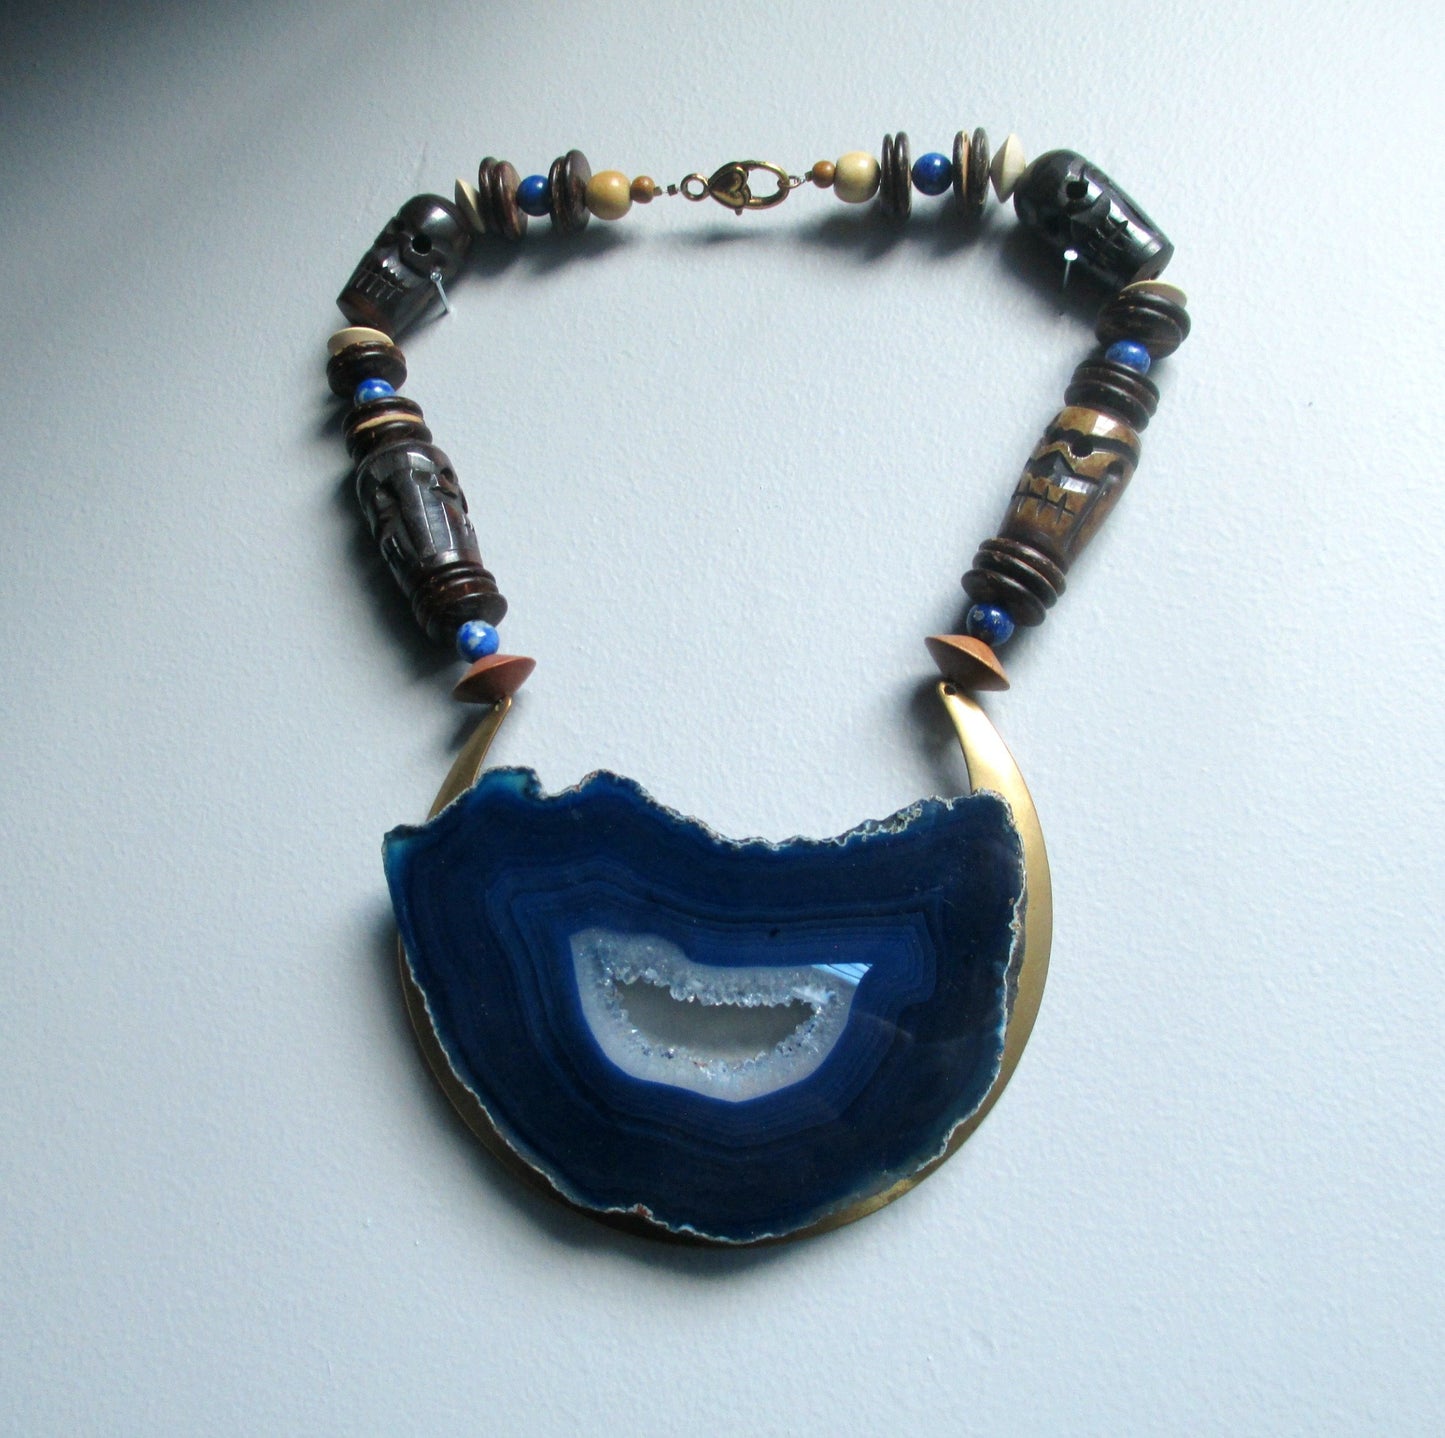 The Other Side. Cobalt Blue Geode Crystal Statement Necklace. Vintage Bone & Lapis Lazuli Portal.